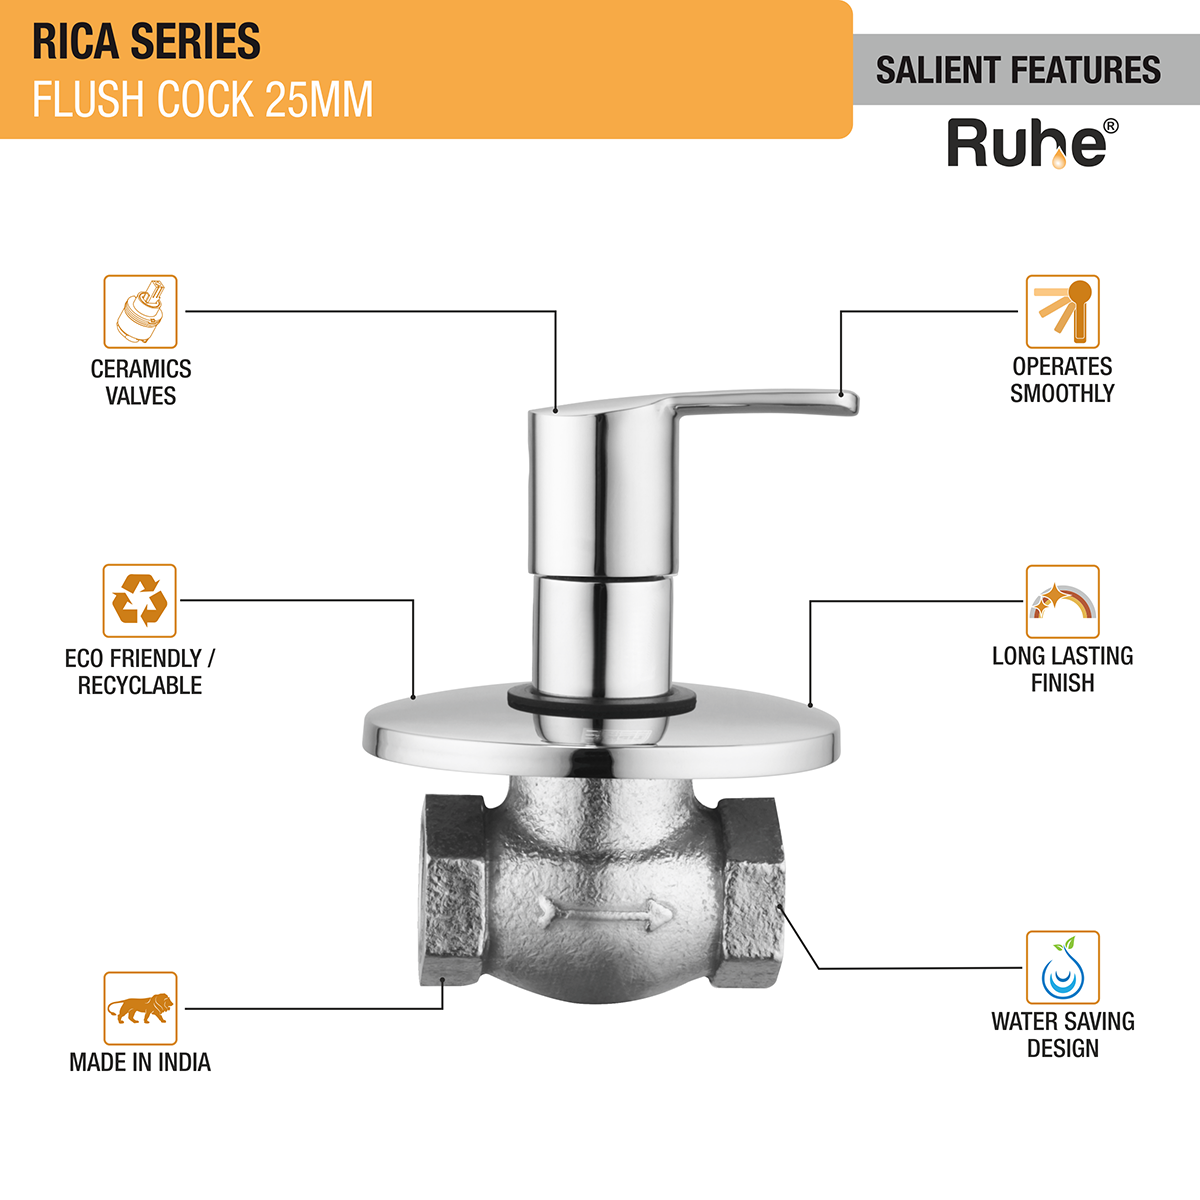 Rica Flush Valve Brass Faucet (25mm) features